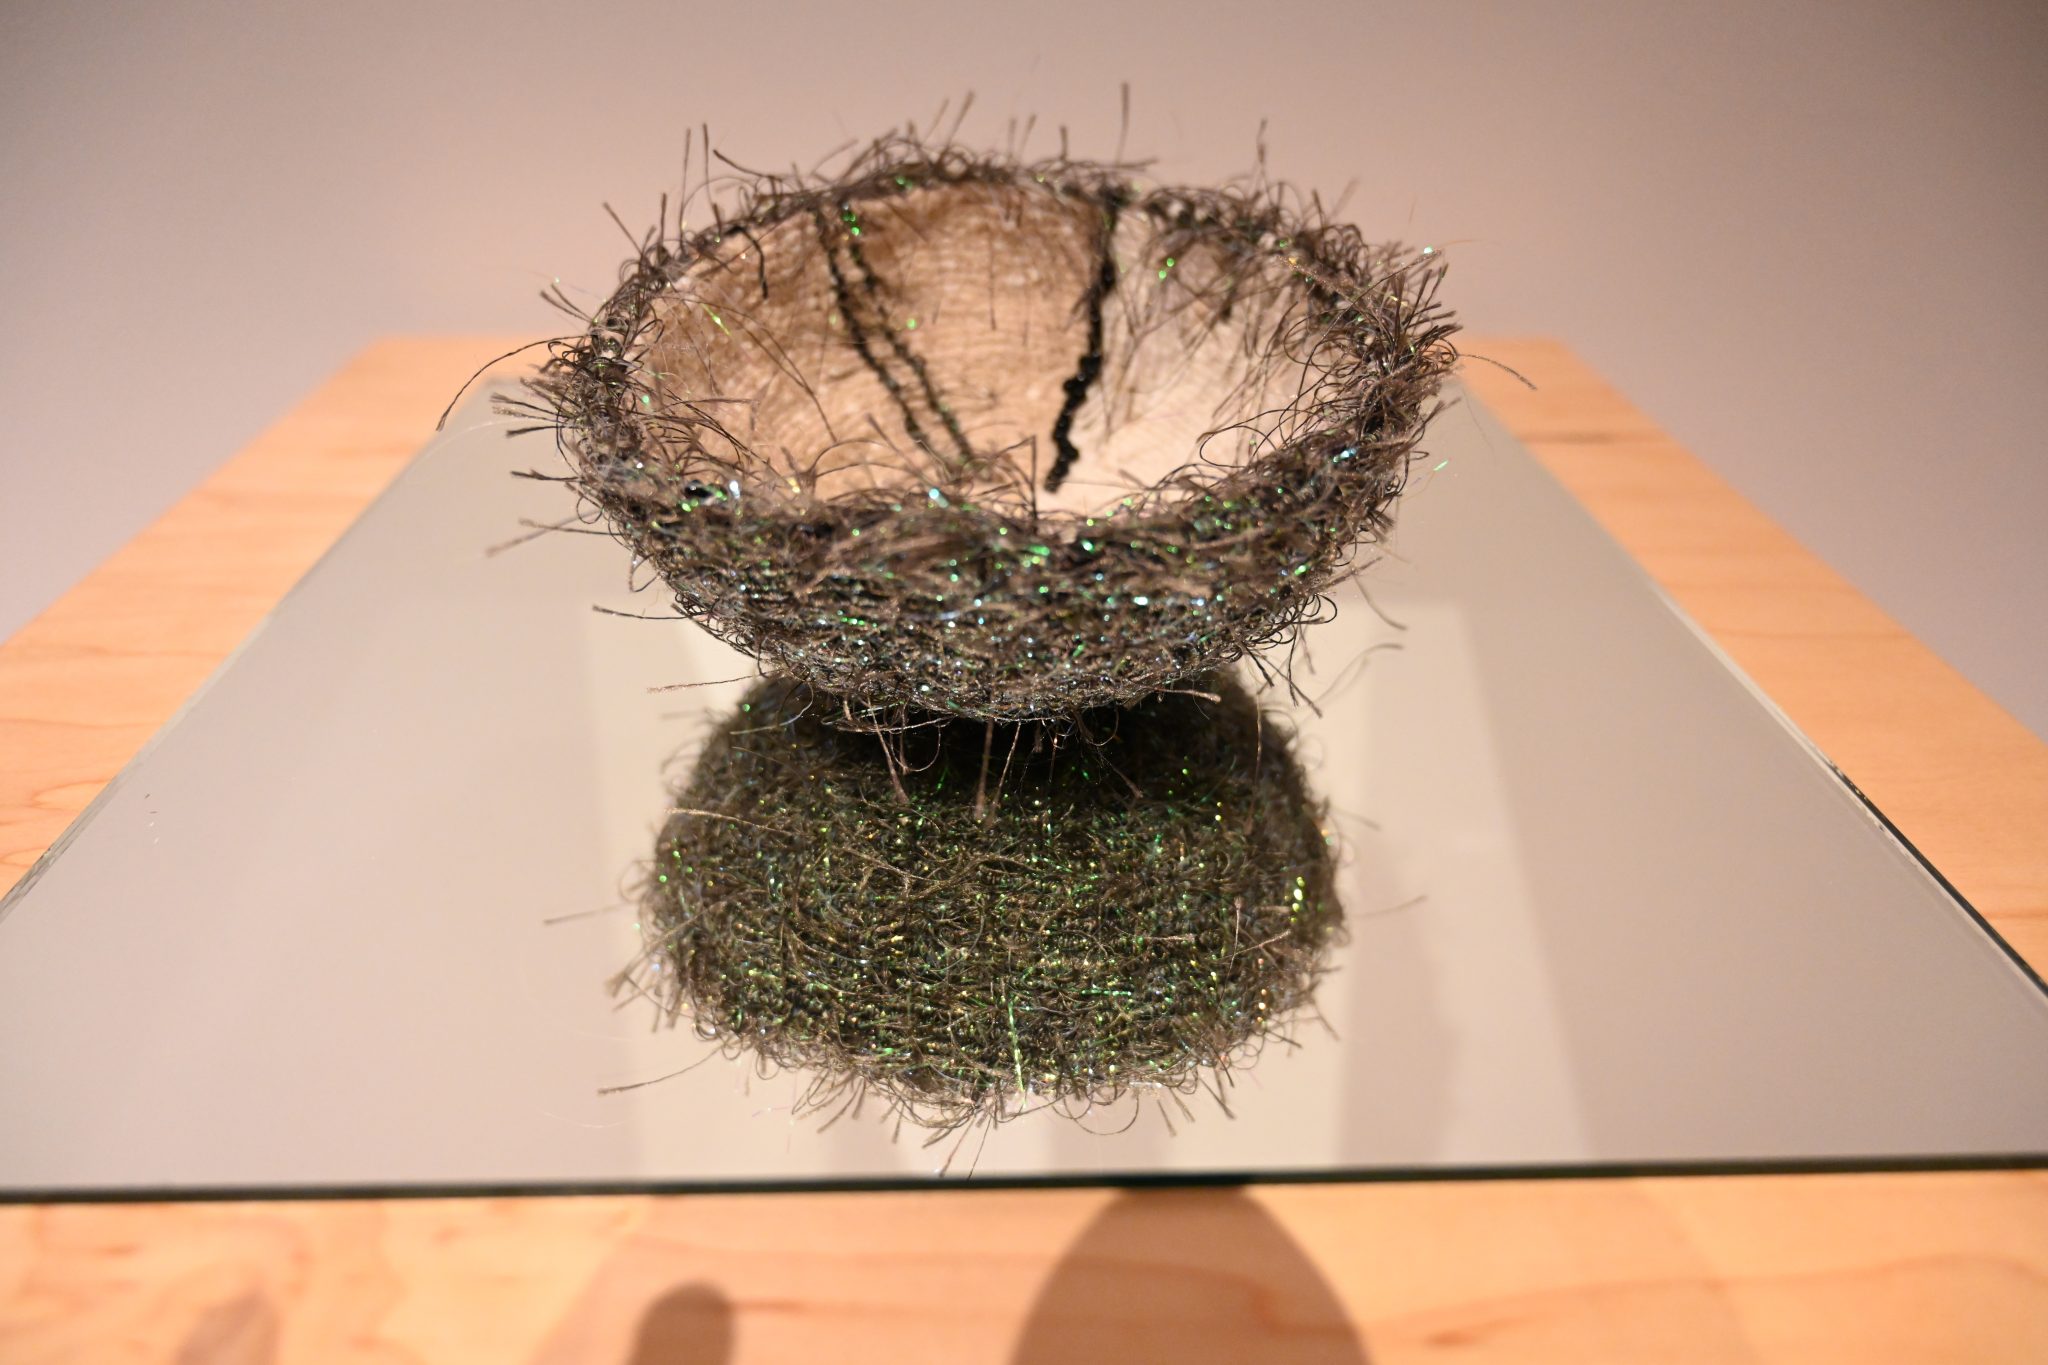 Linda Barlow, Nightshade, knotting, yarn, thread, beads, 2019